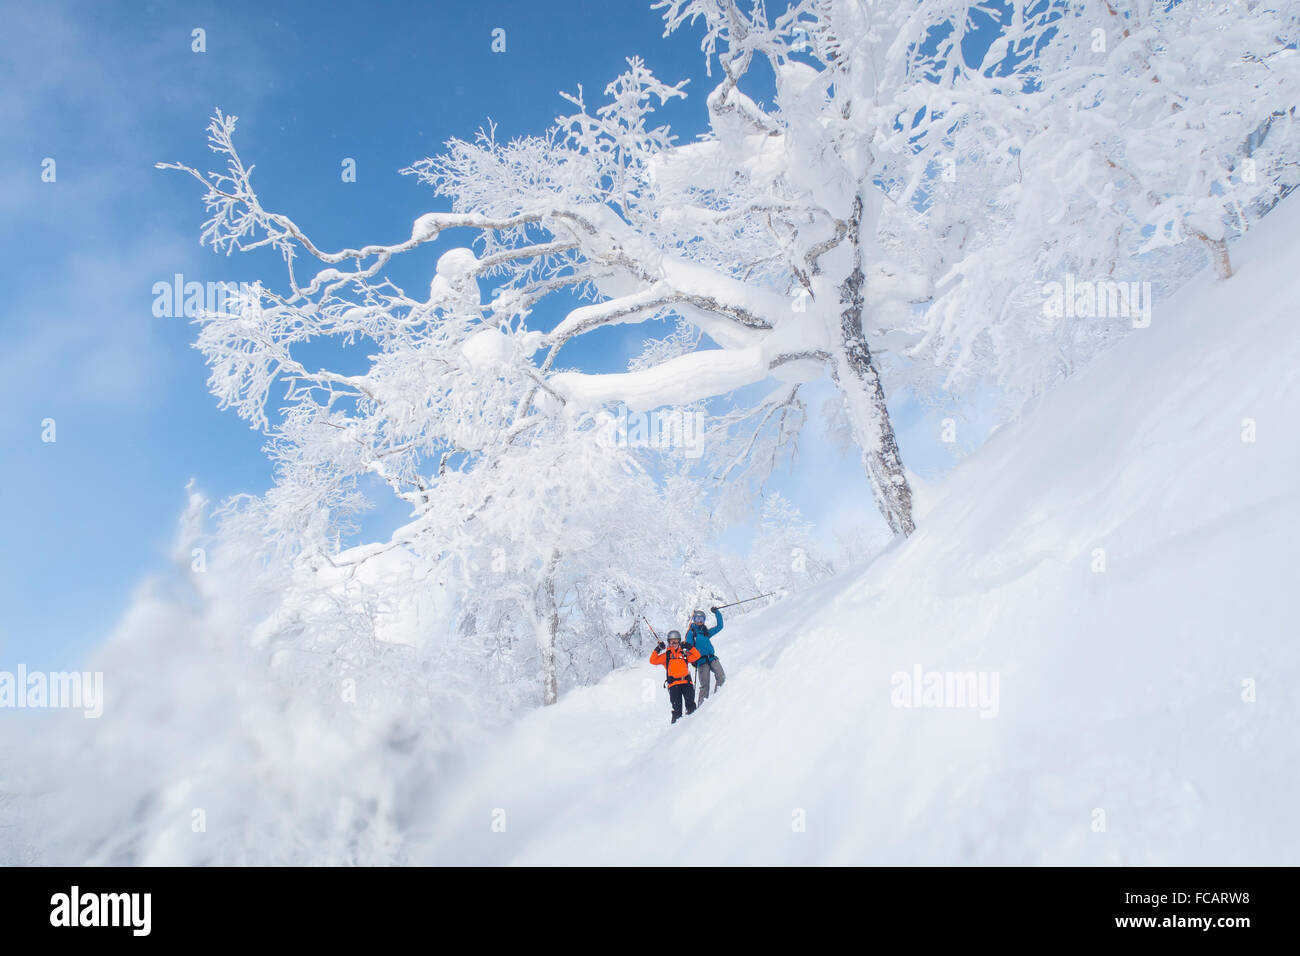 Zwei glückliche Skifahrerinnen in eine herrliche Winterlandschaft mit weiß verputzten gefrorenen Bäumen, in der Nähe von Kiroro Skigebiet am Hakkaido, Stockfoto